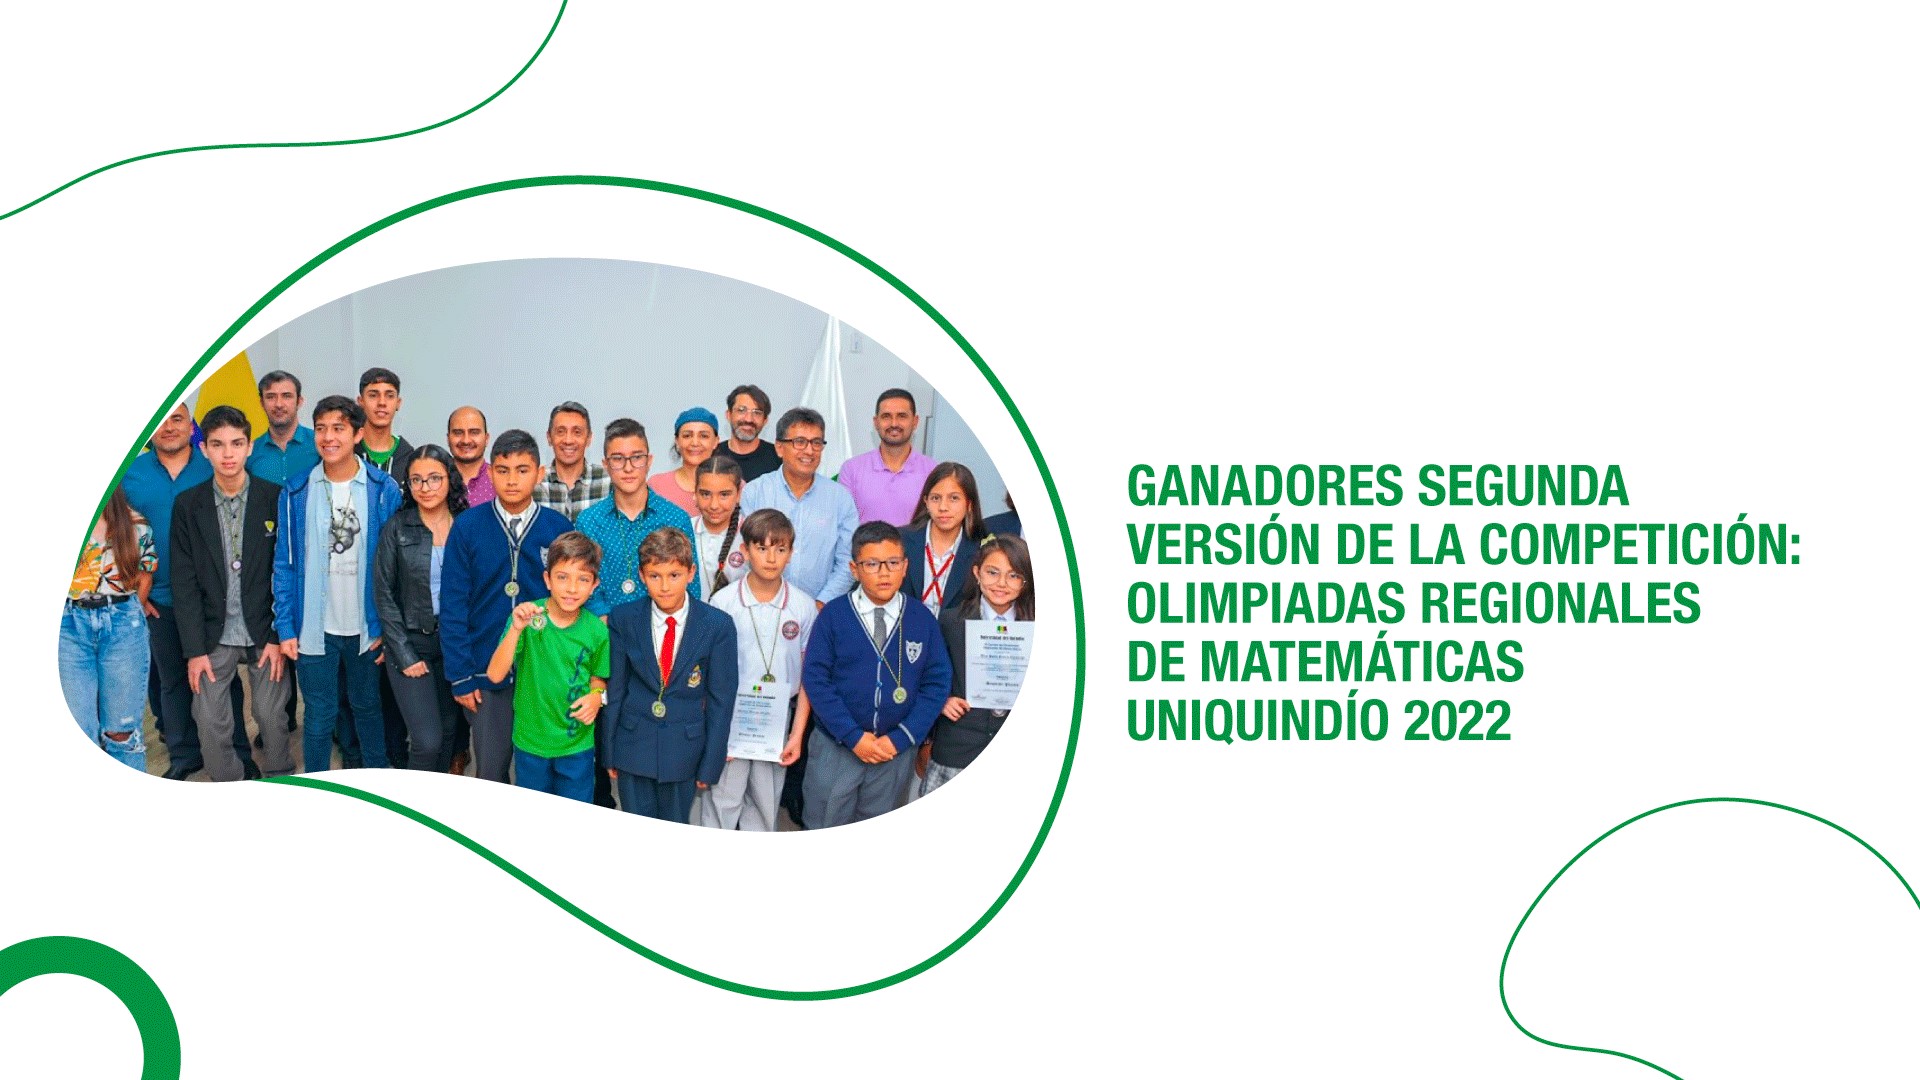 Ganadores segunda versión de la competición: Olimpiadas Regionales de Matemáticas Uniquindío 2022